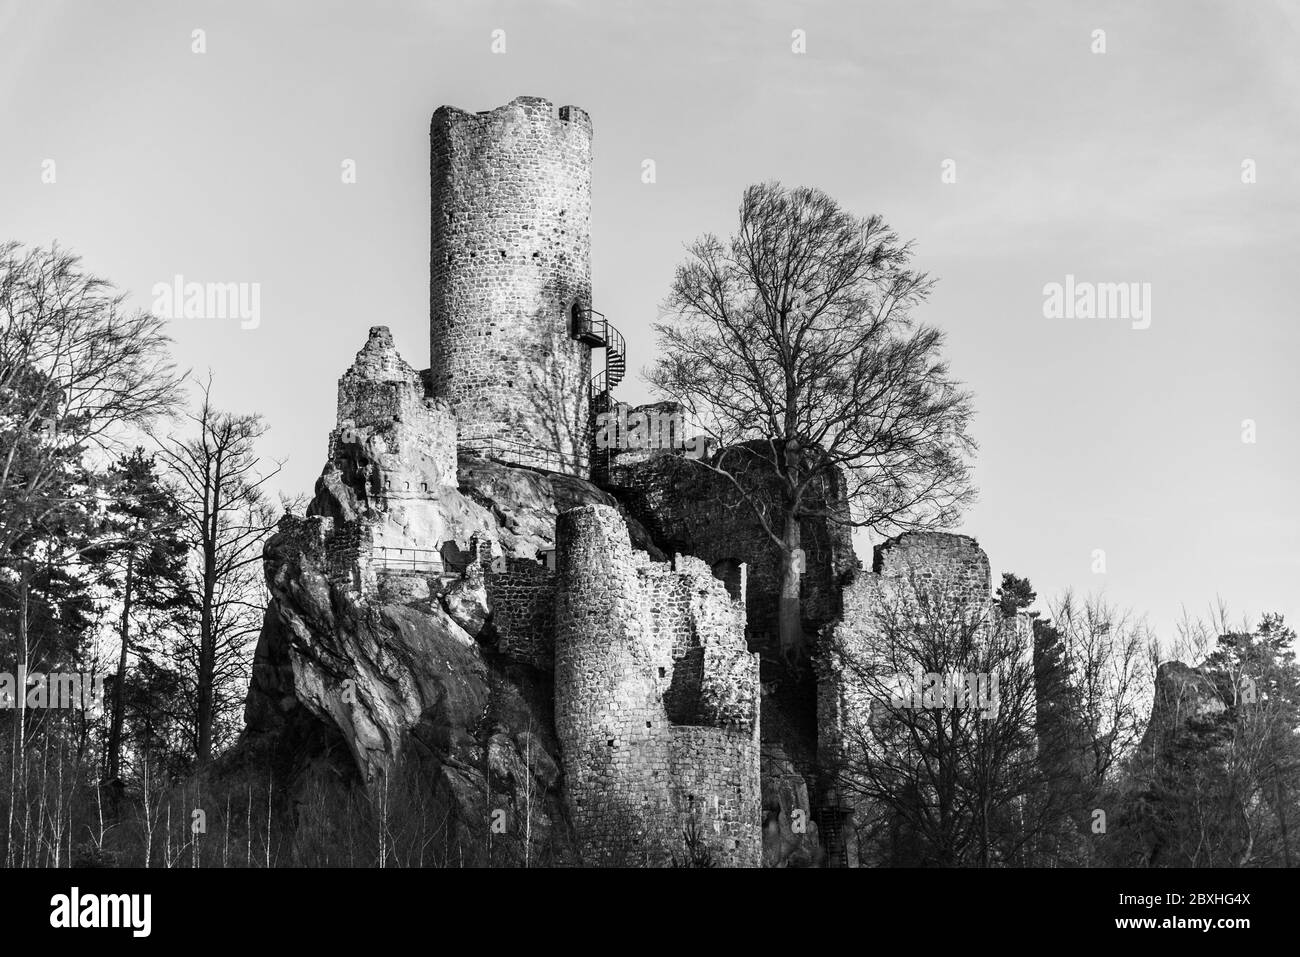 Château de Frydstejn. Ruines médiévales avec tour en pierre. Bohemian Pradise, Tchèque: Cesky raj, République Tchèque. Image en noir et blanc. Banque D'Images